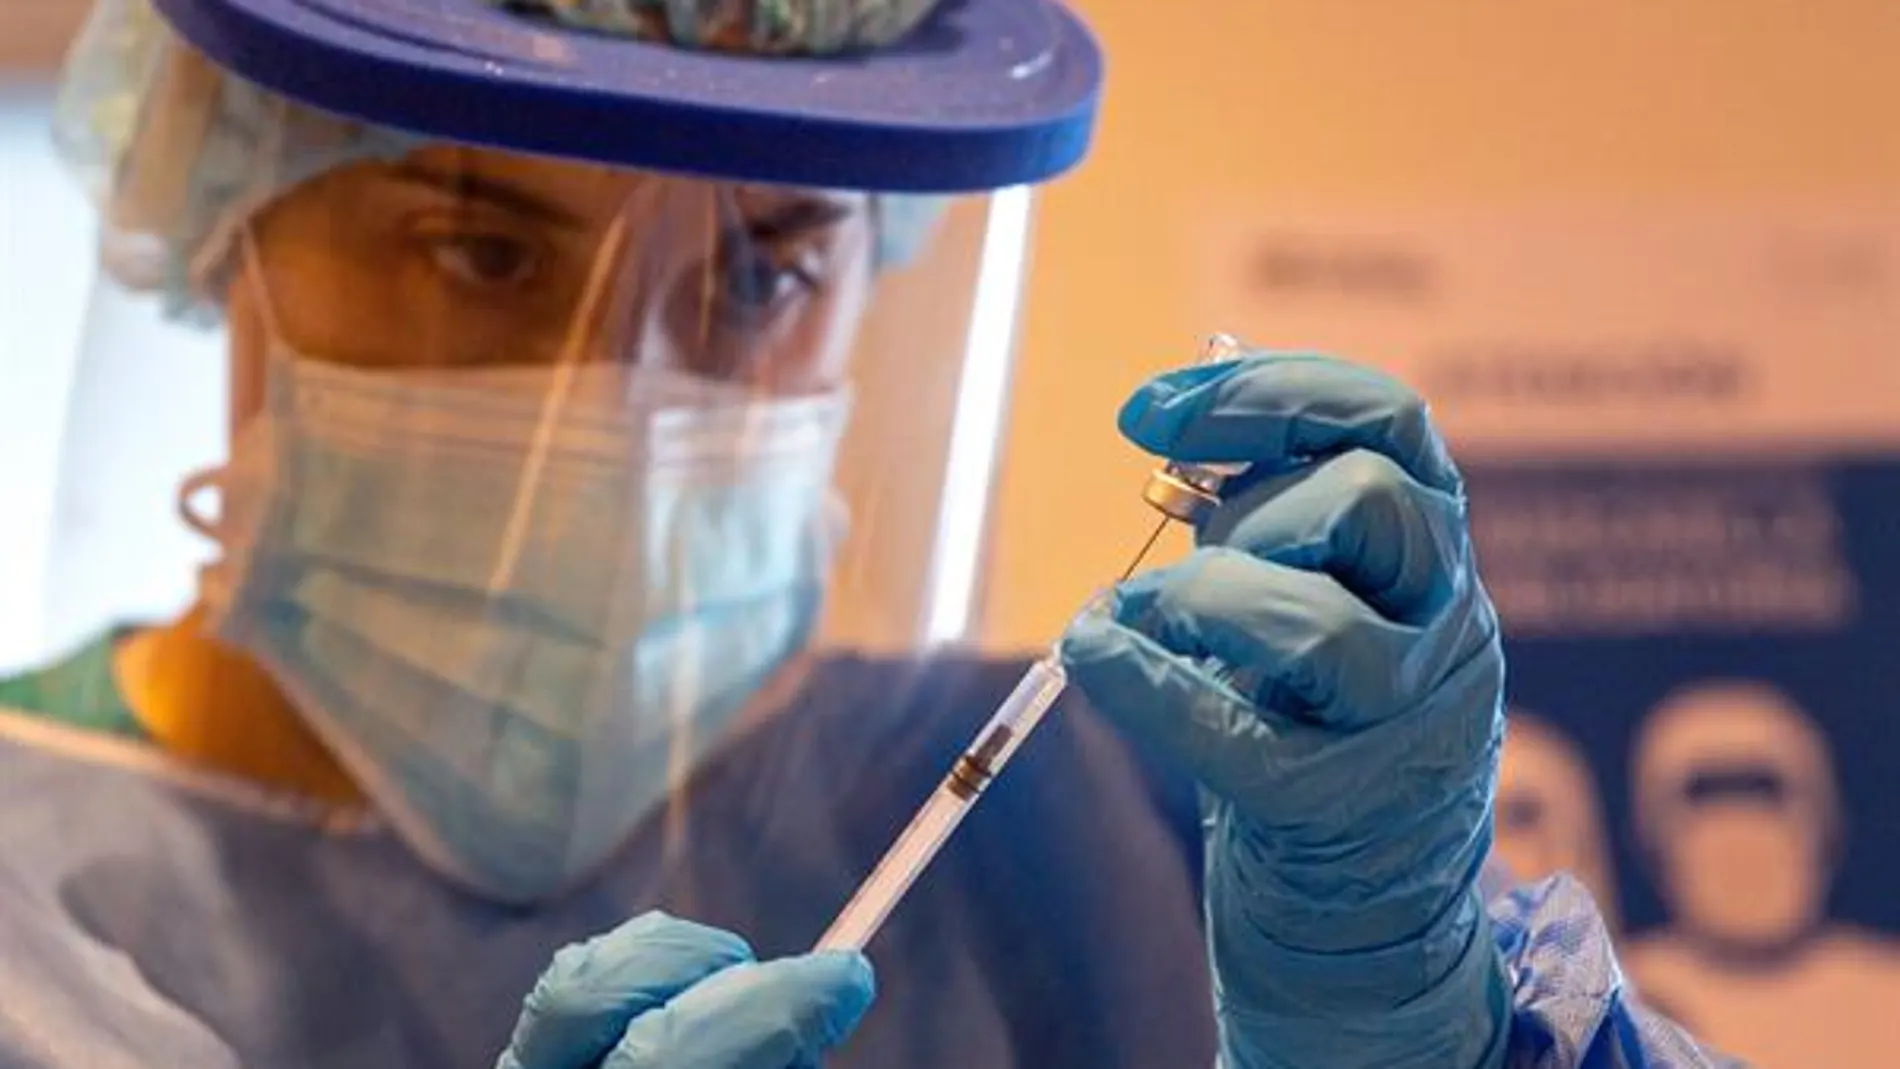 Una sanitaria prepara una vacuna contra el coronavirus